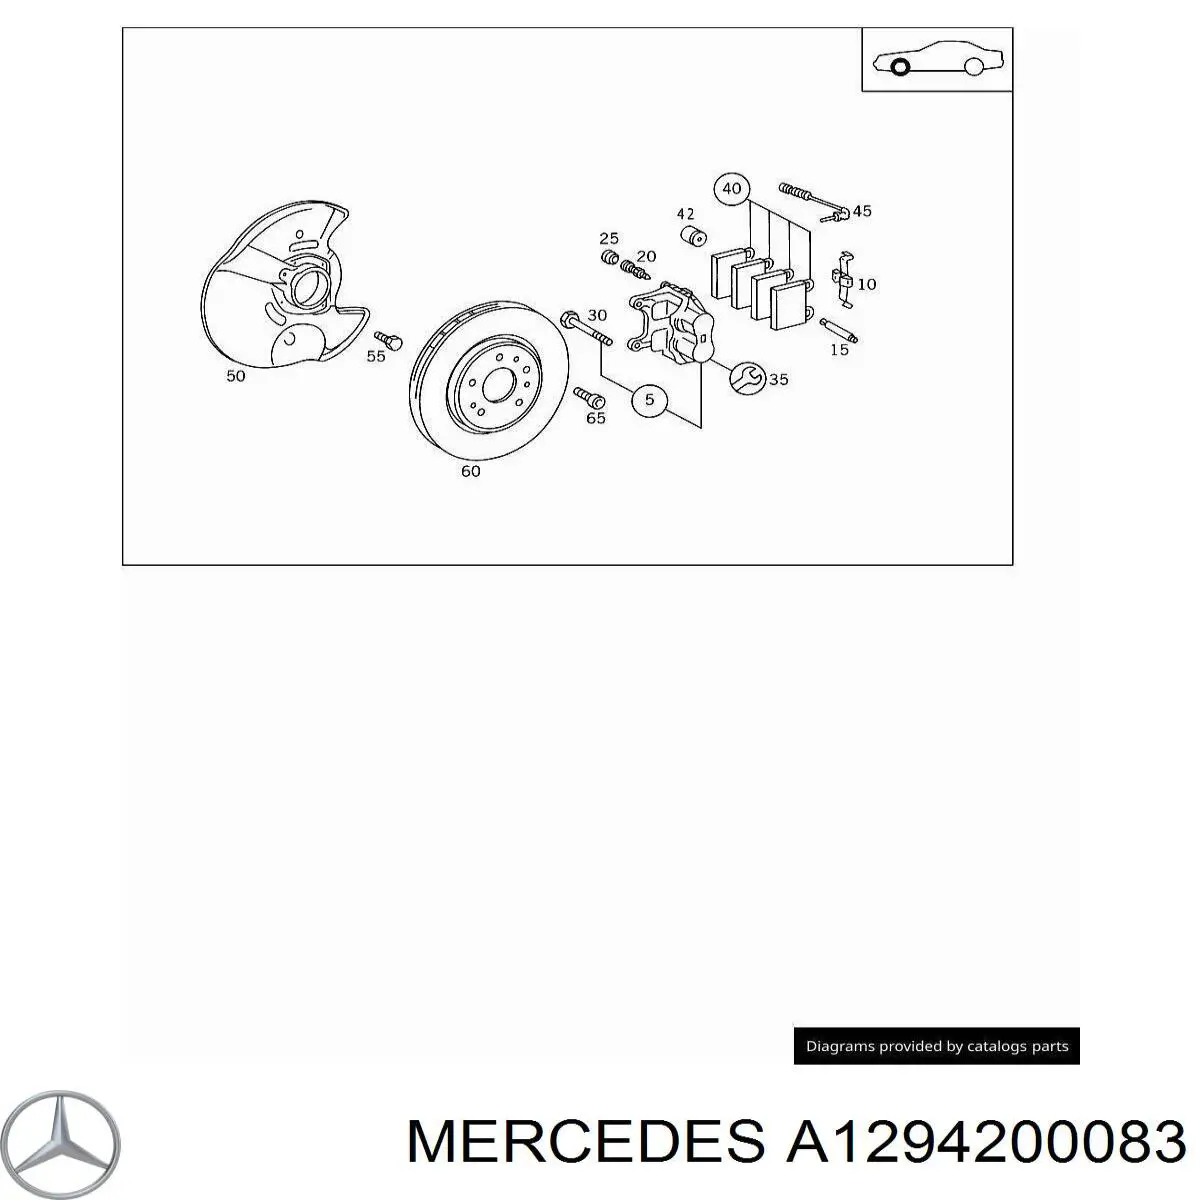 A1294200083 Mercedes pinza de freno trasero derecho